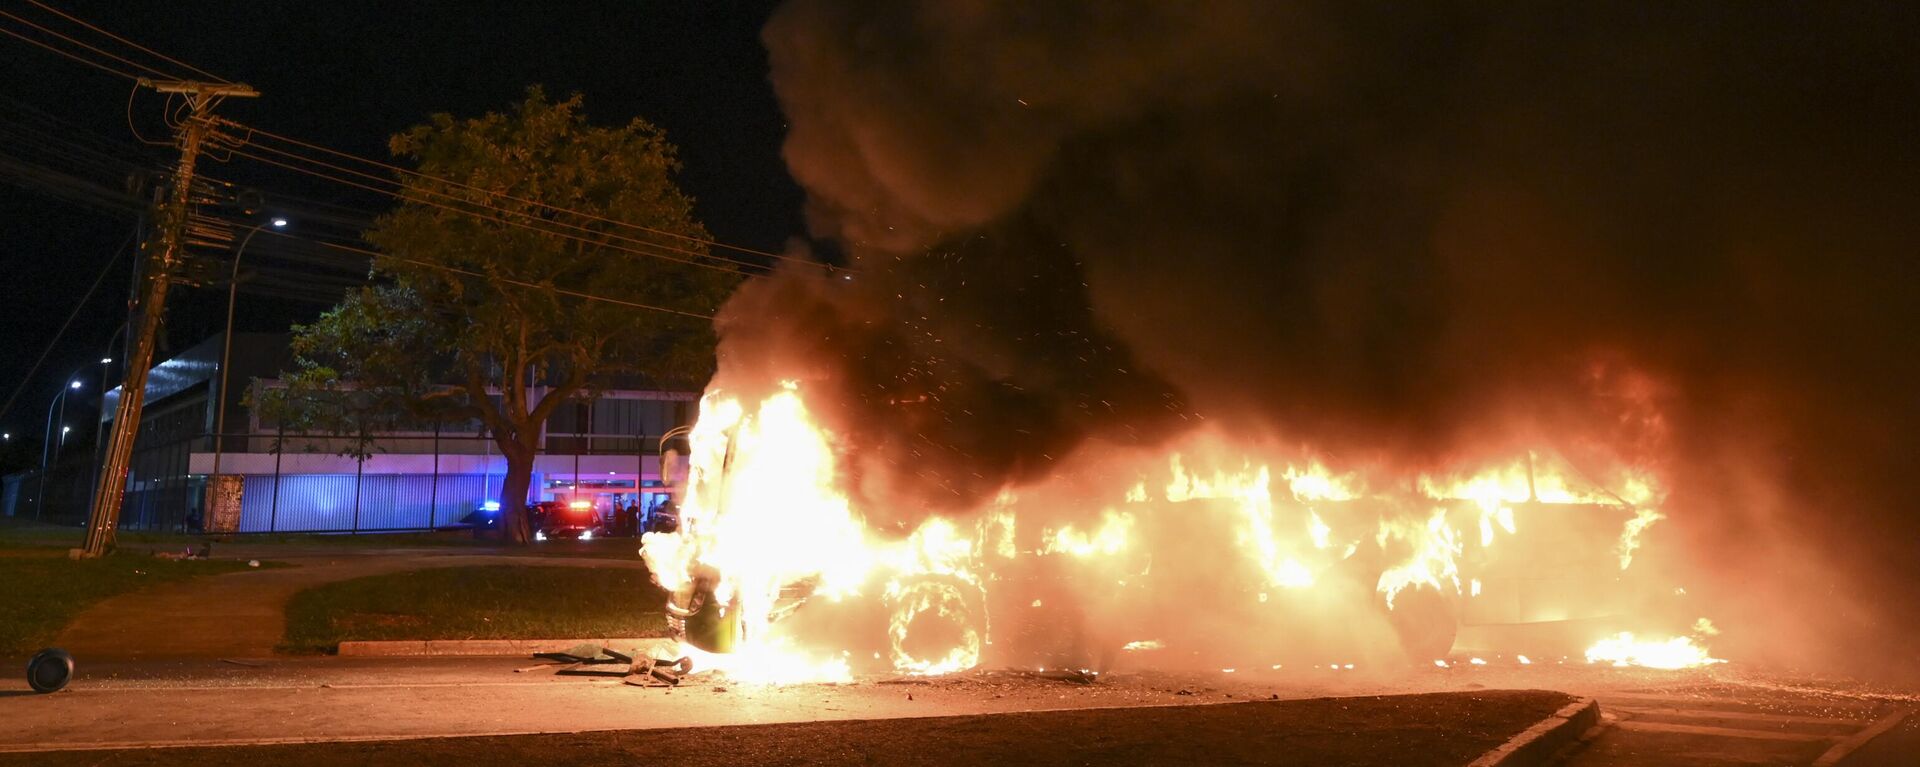 Un camión arde en llamas después de los enfrentamientos entre simpatizantes de Bolsonaro y la policía, el 12 de diciembre de 2022, en Brasilia - Sputnik Mundo, 1920, 13.12.2022